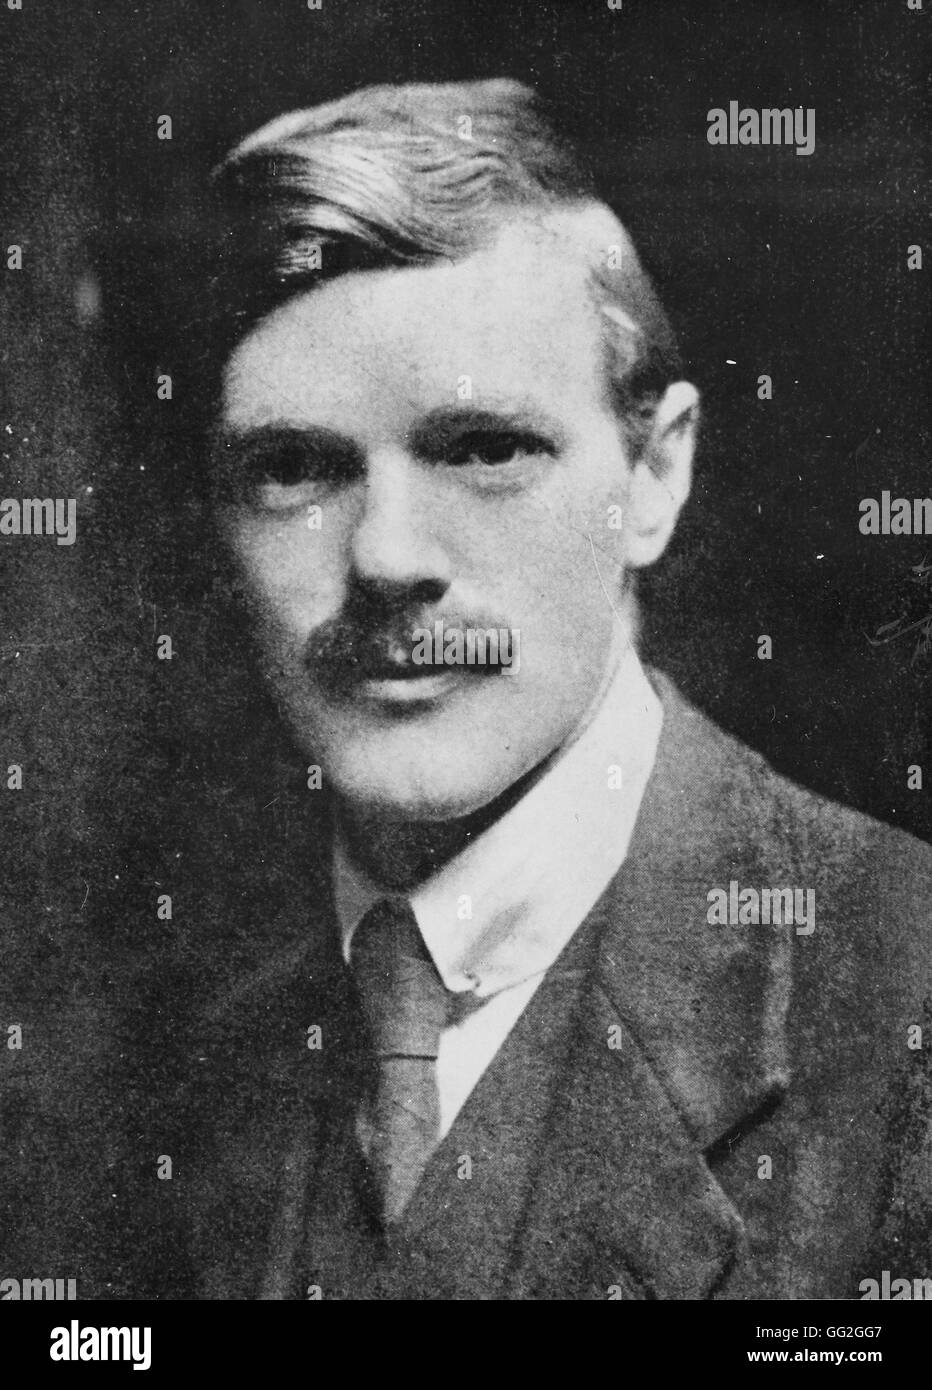 Portrait de David Herbert Lawrence, auteur britannique. Photographie prise en 1914 Banque D'Images